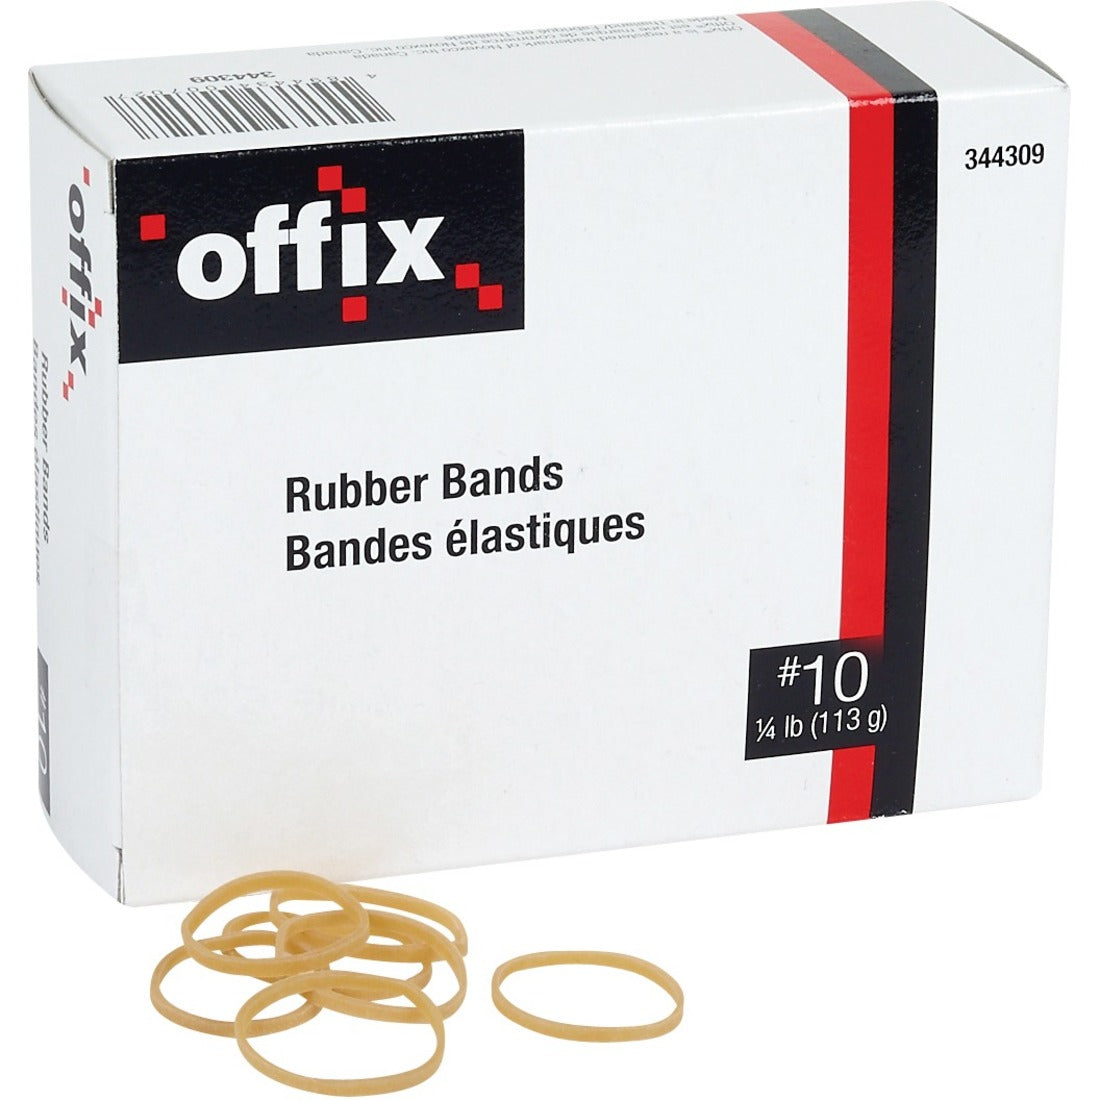 Offix Rubber Band  - Elastic - 1 /4LB (113g) Box